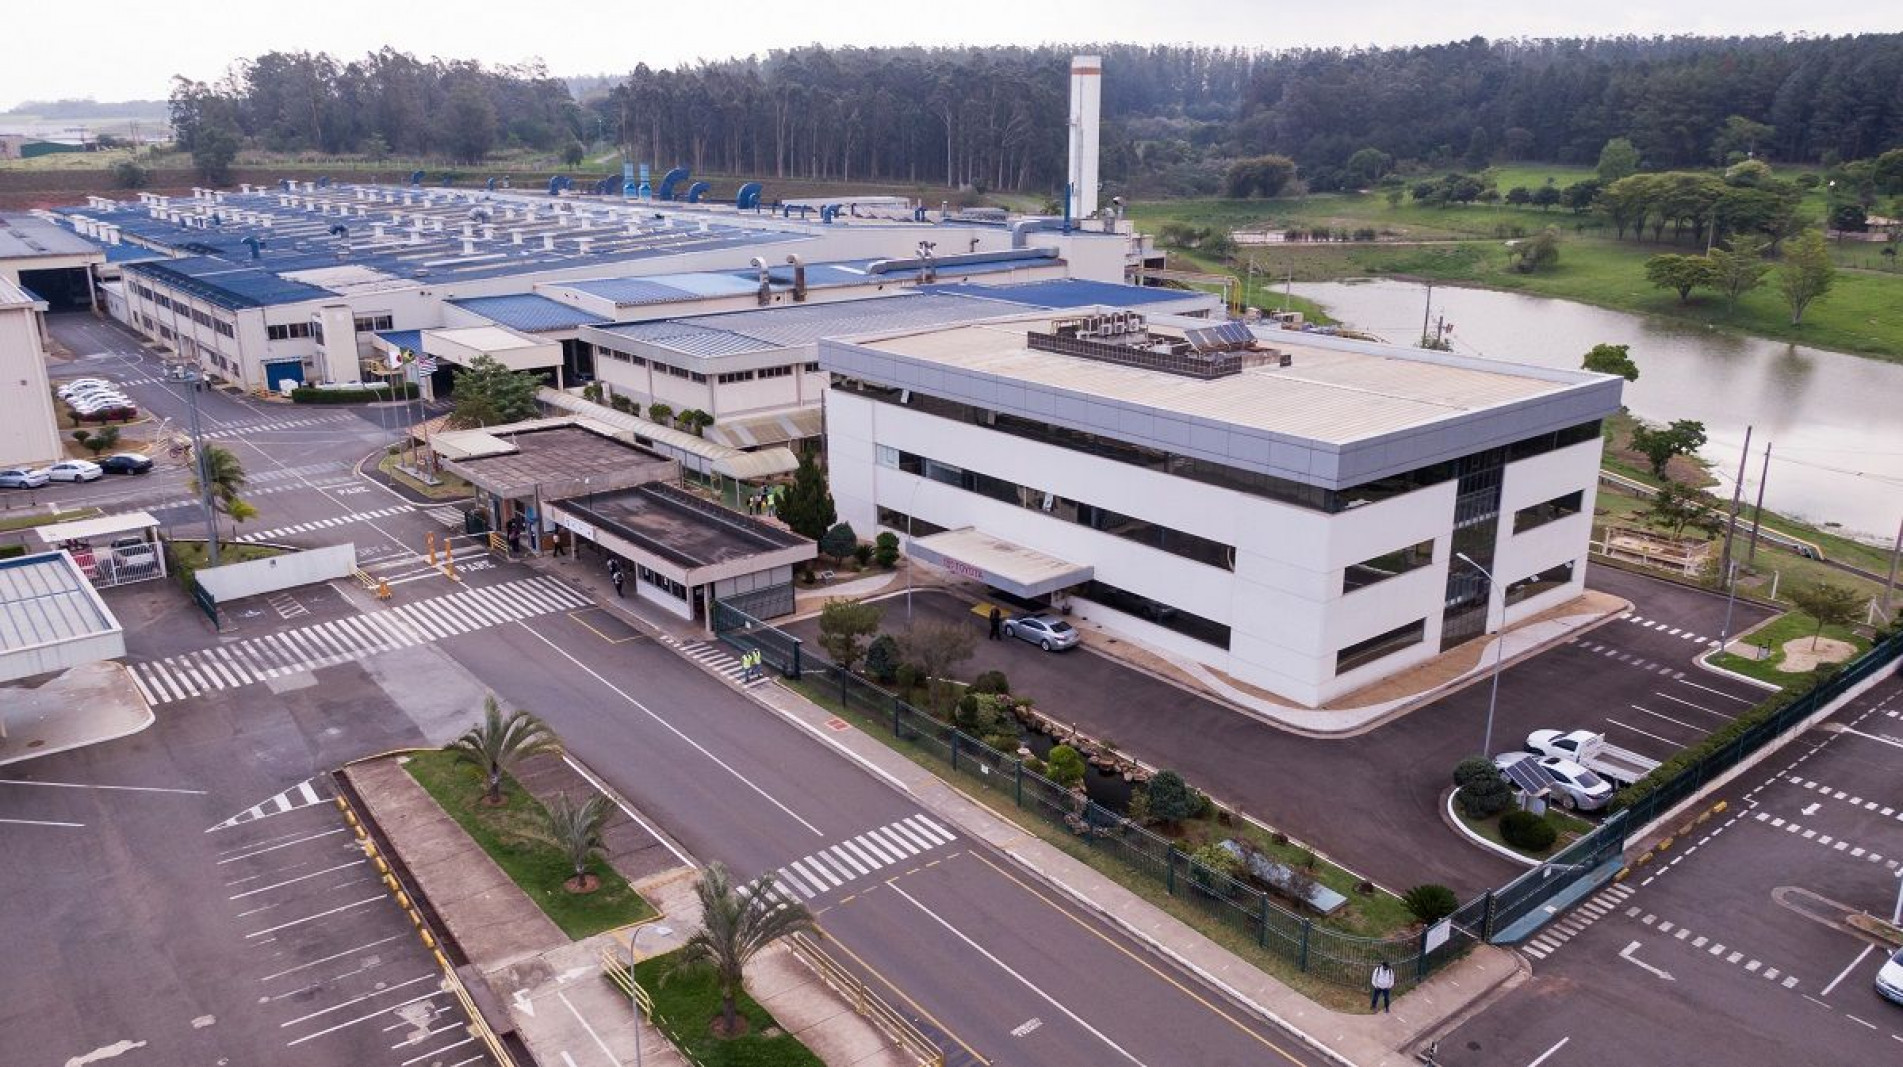 Montadora anunciou transferência da produção da planta de Indaiatuba para Sorocaba